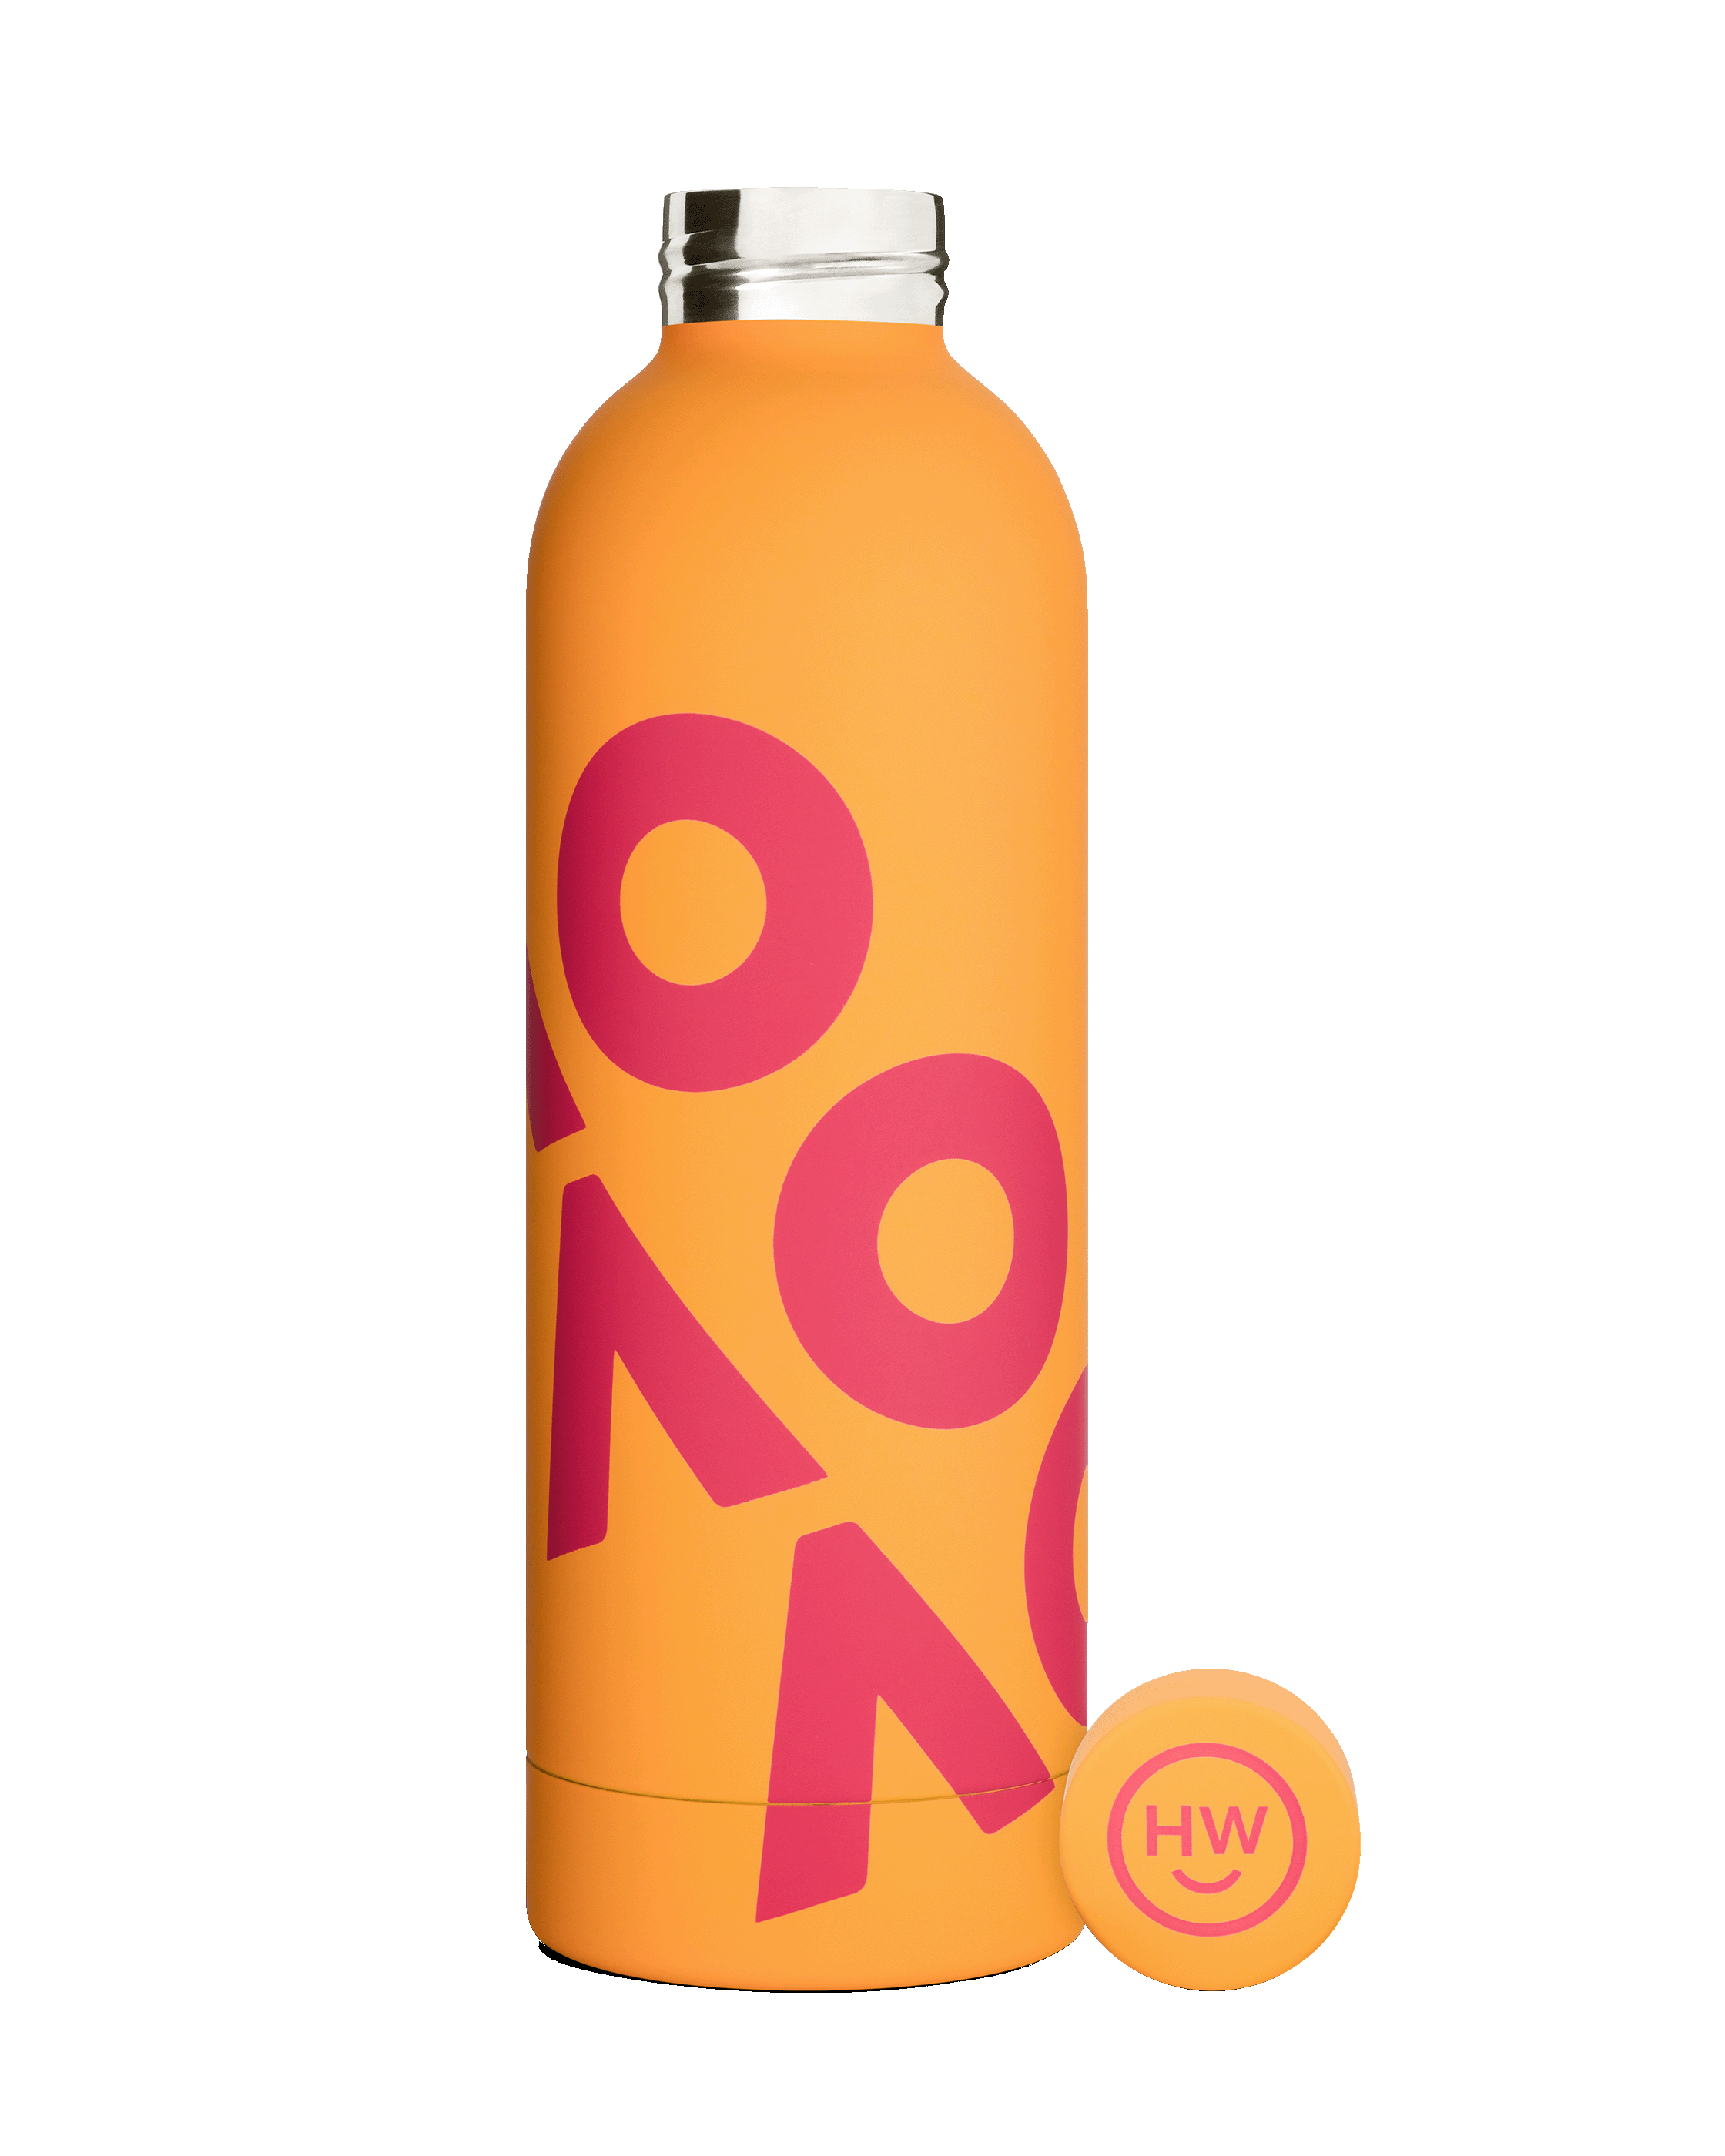 Pastel bottle - orange